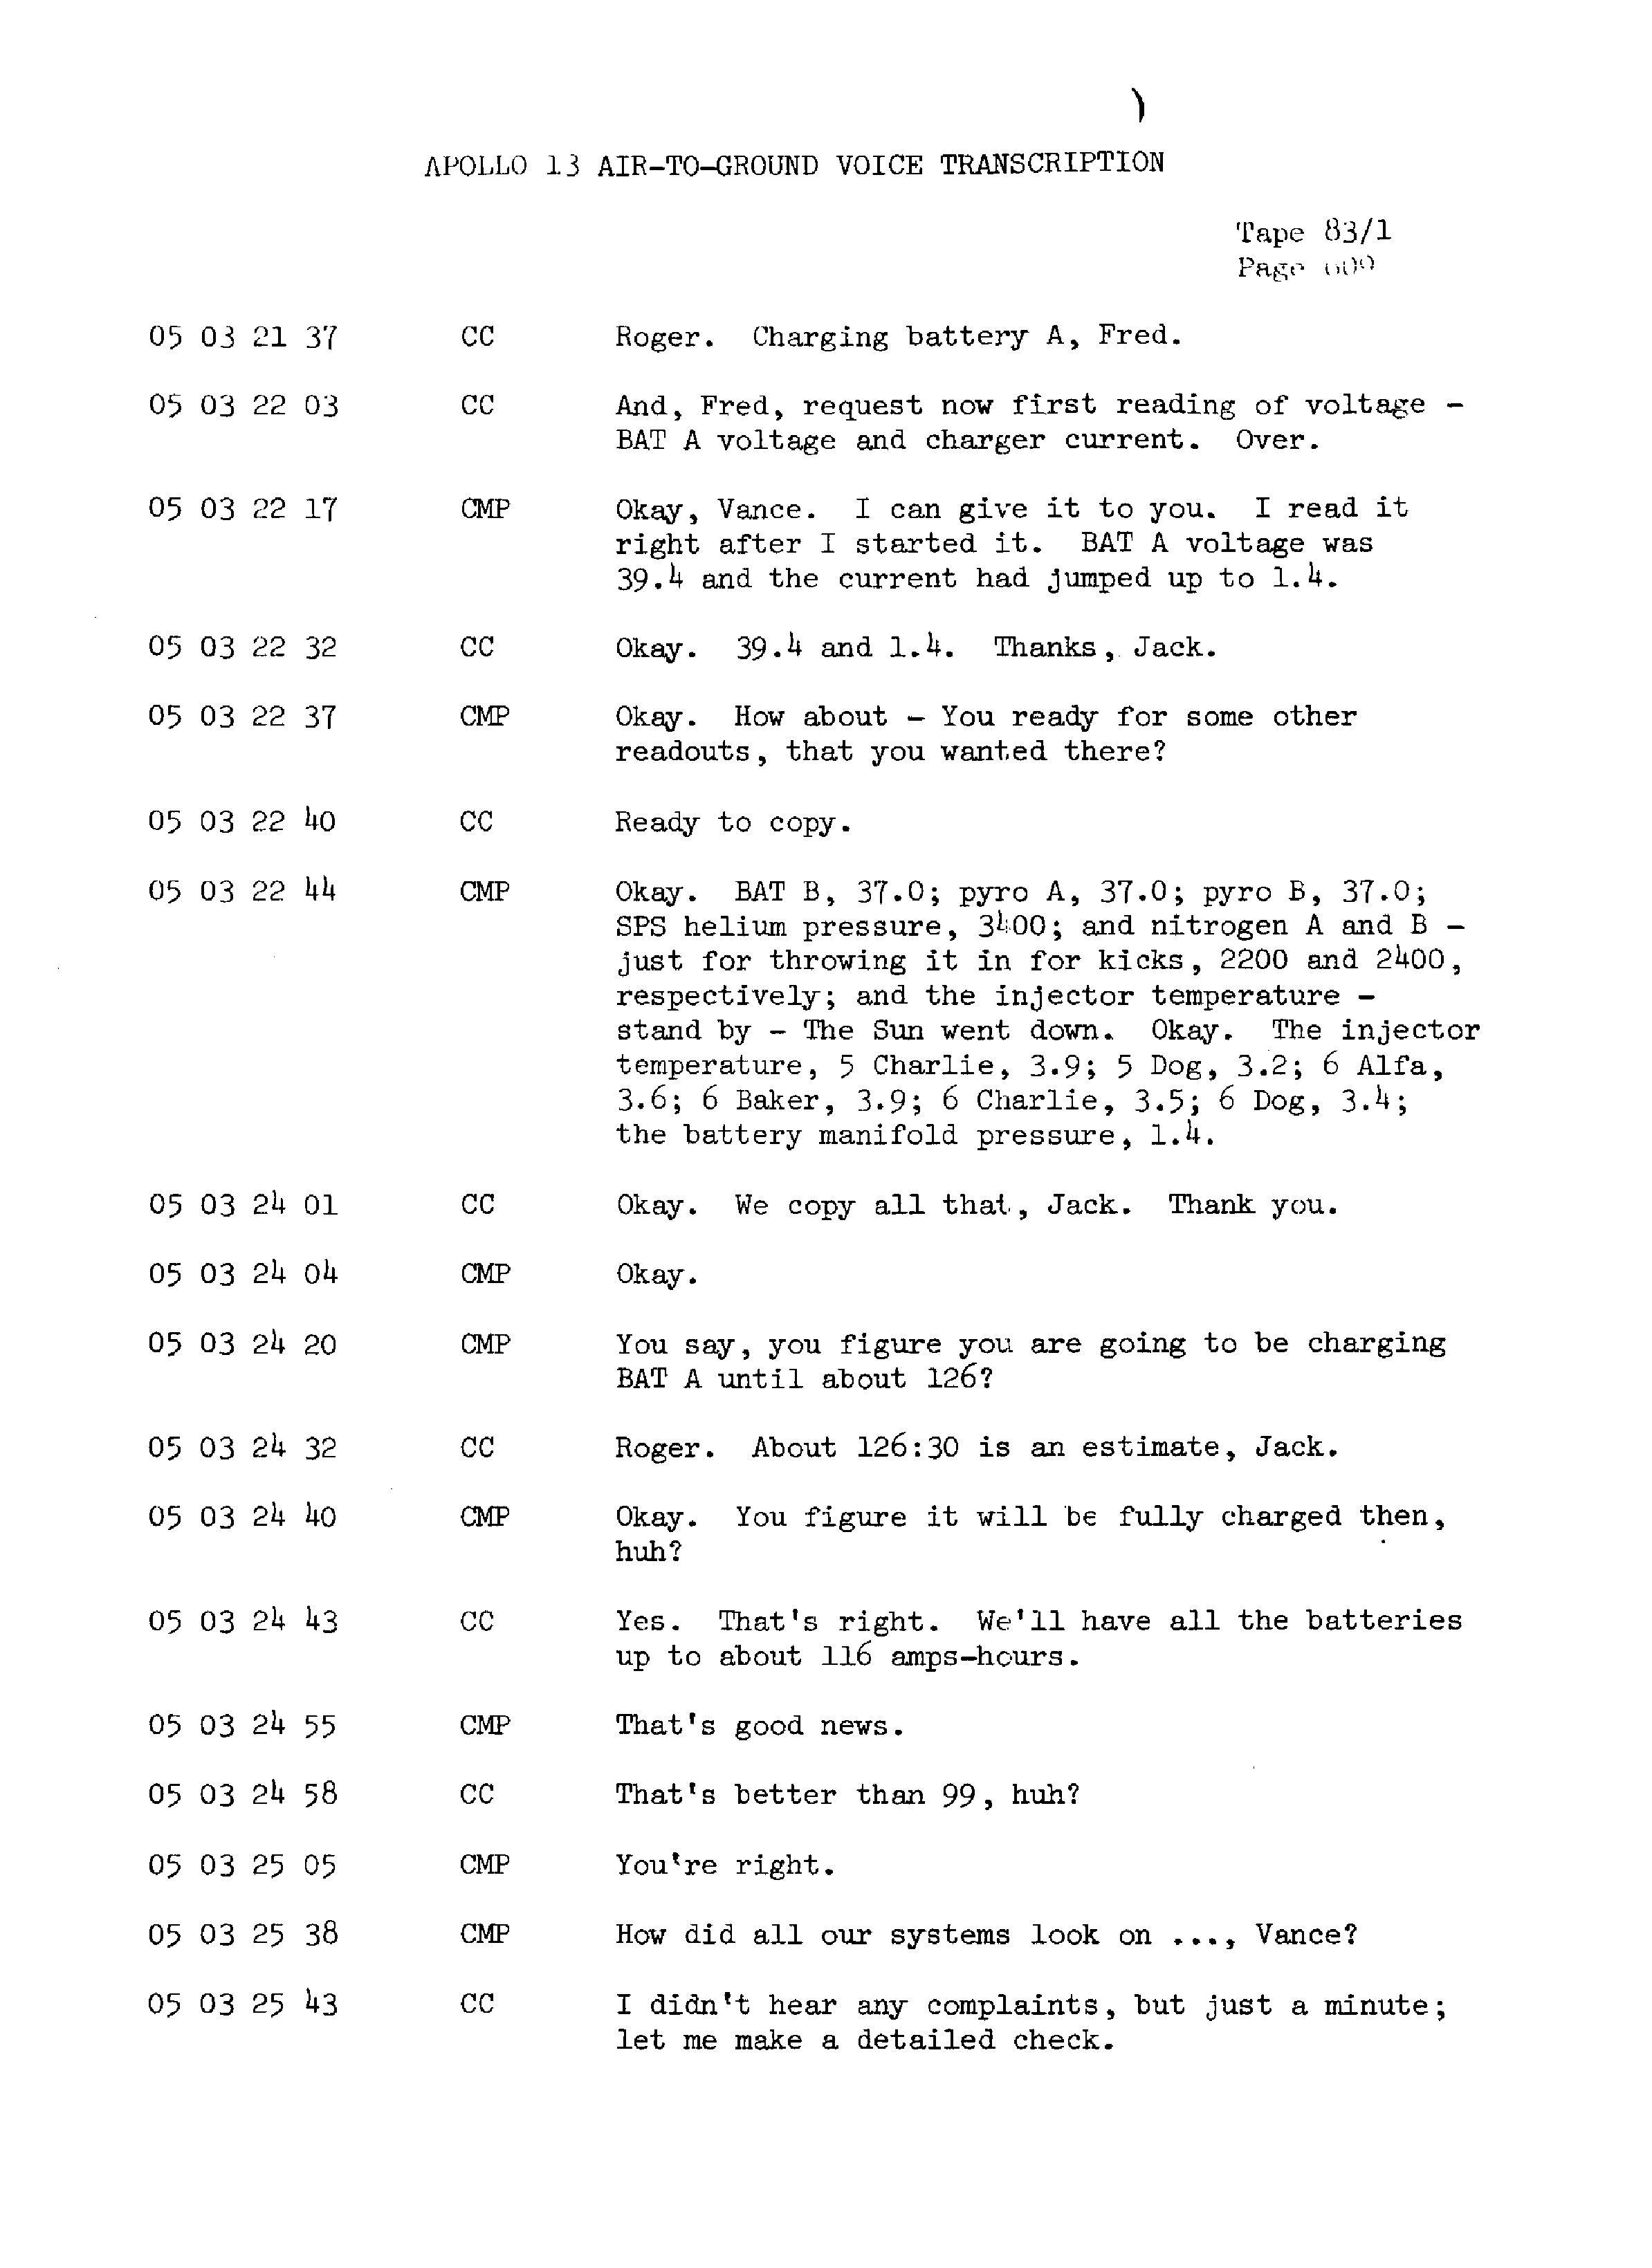 Page 616 of Apollo 13’s original transcript